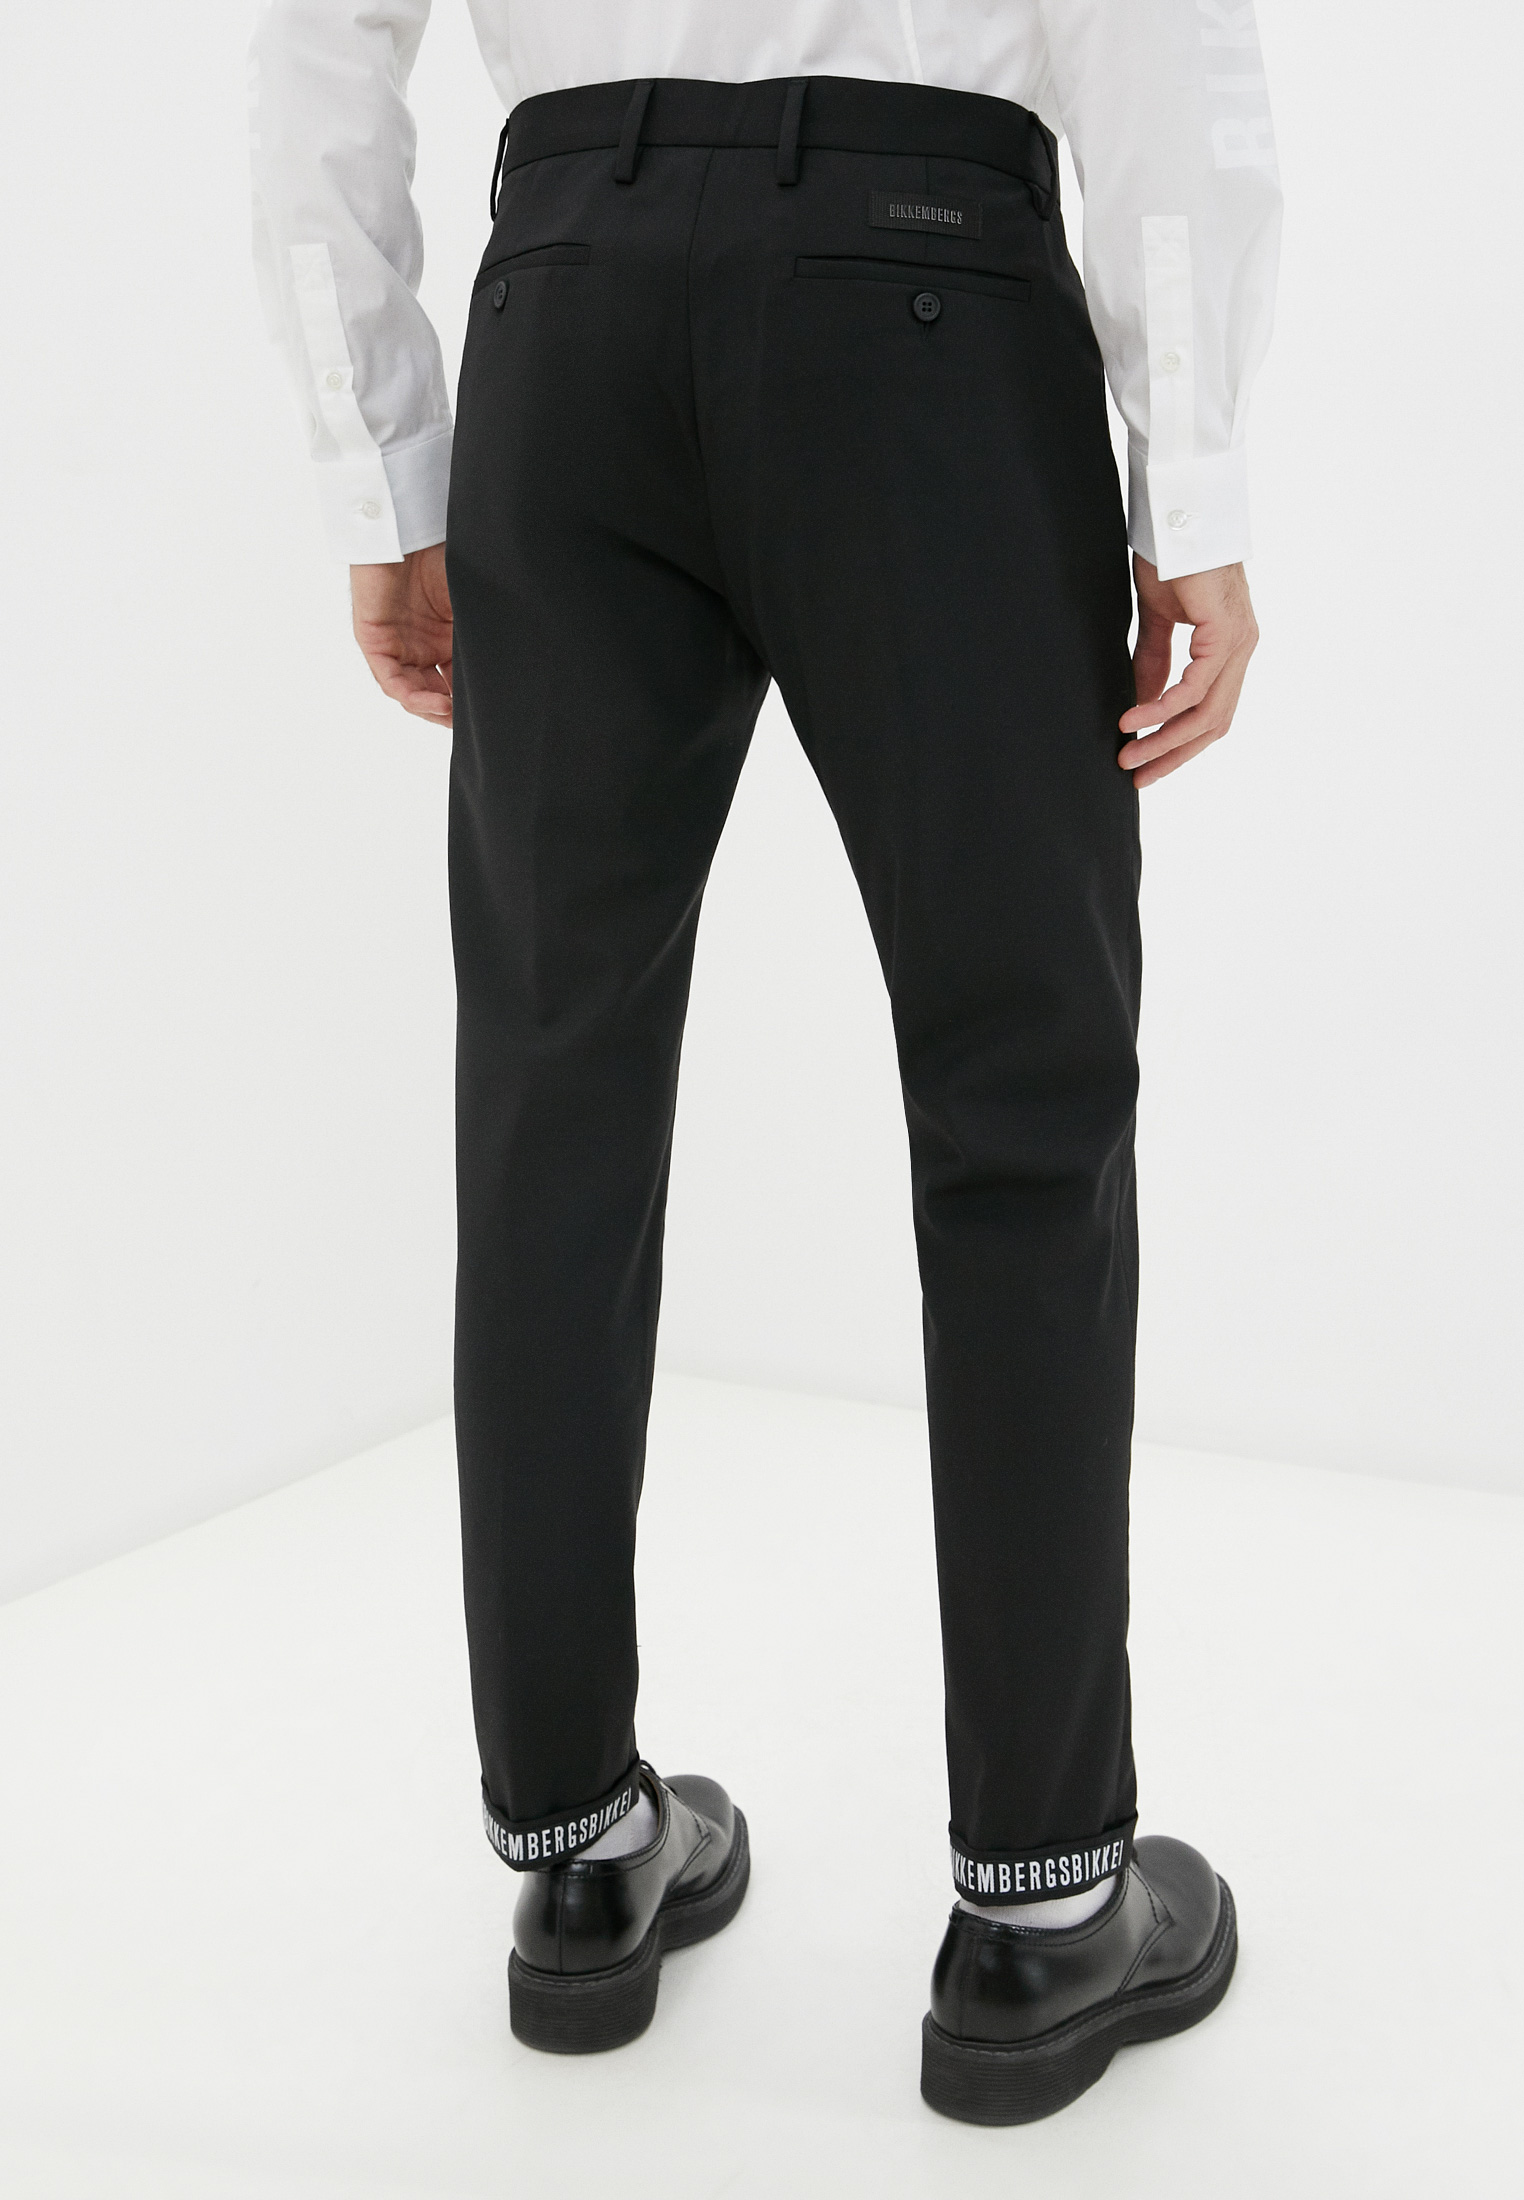 Мужские классические брюки Bikkembergs (Биккембергс) C P 001 00 S 3452: изображение 14